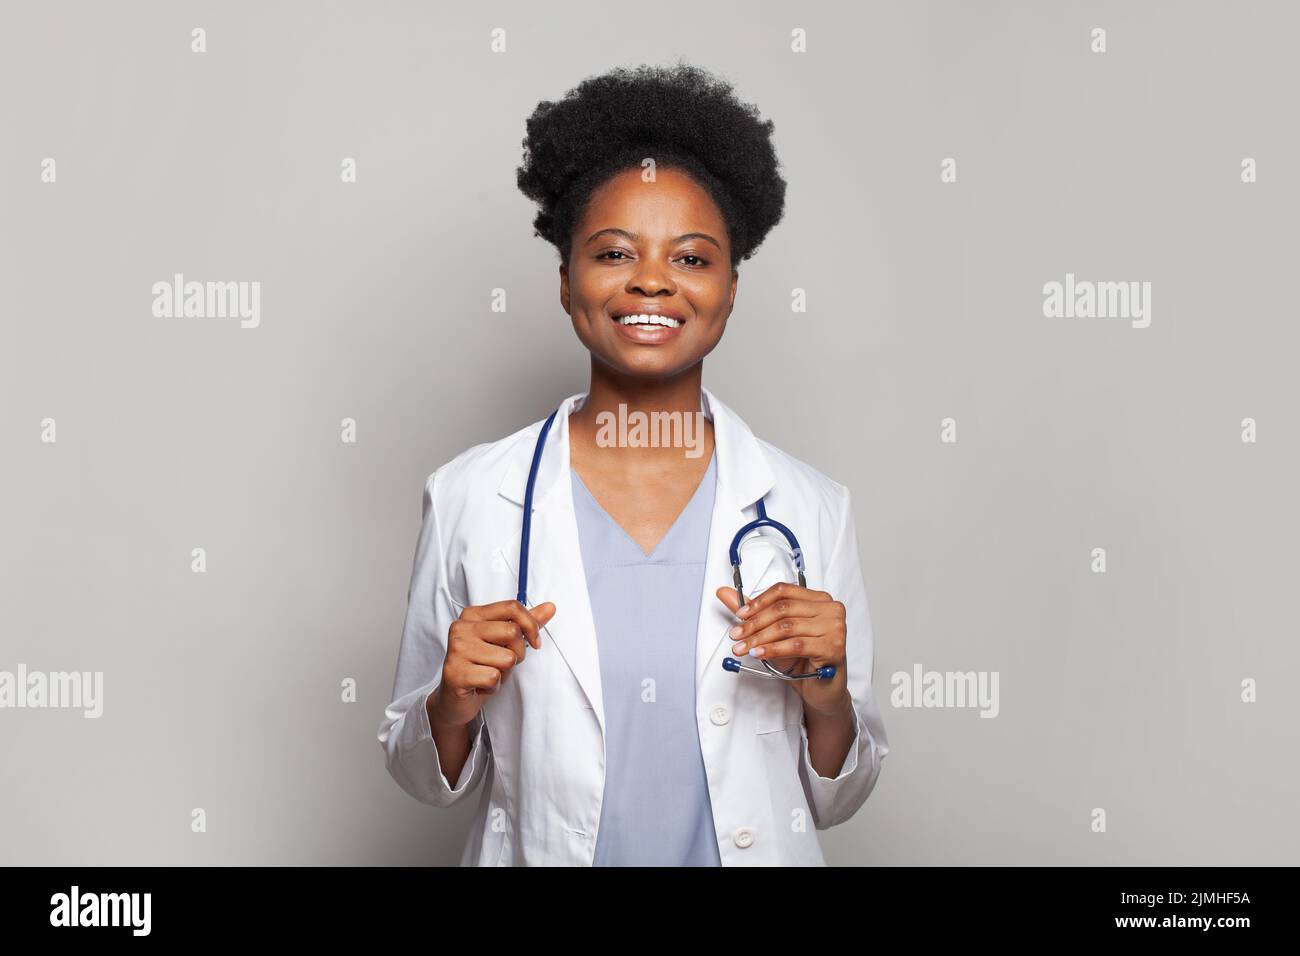 Amiga doctora usando abrigo blanco con estetoscopio mirando la cámara y sonriendo alegremente Foto de stock